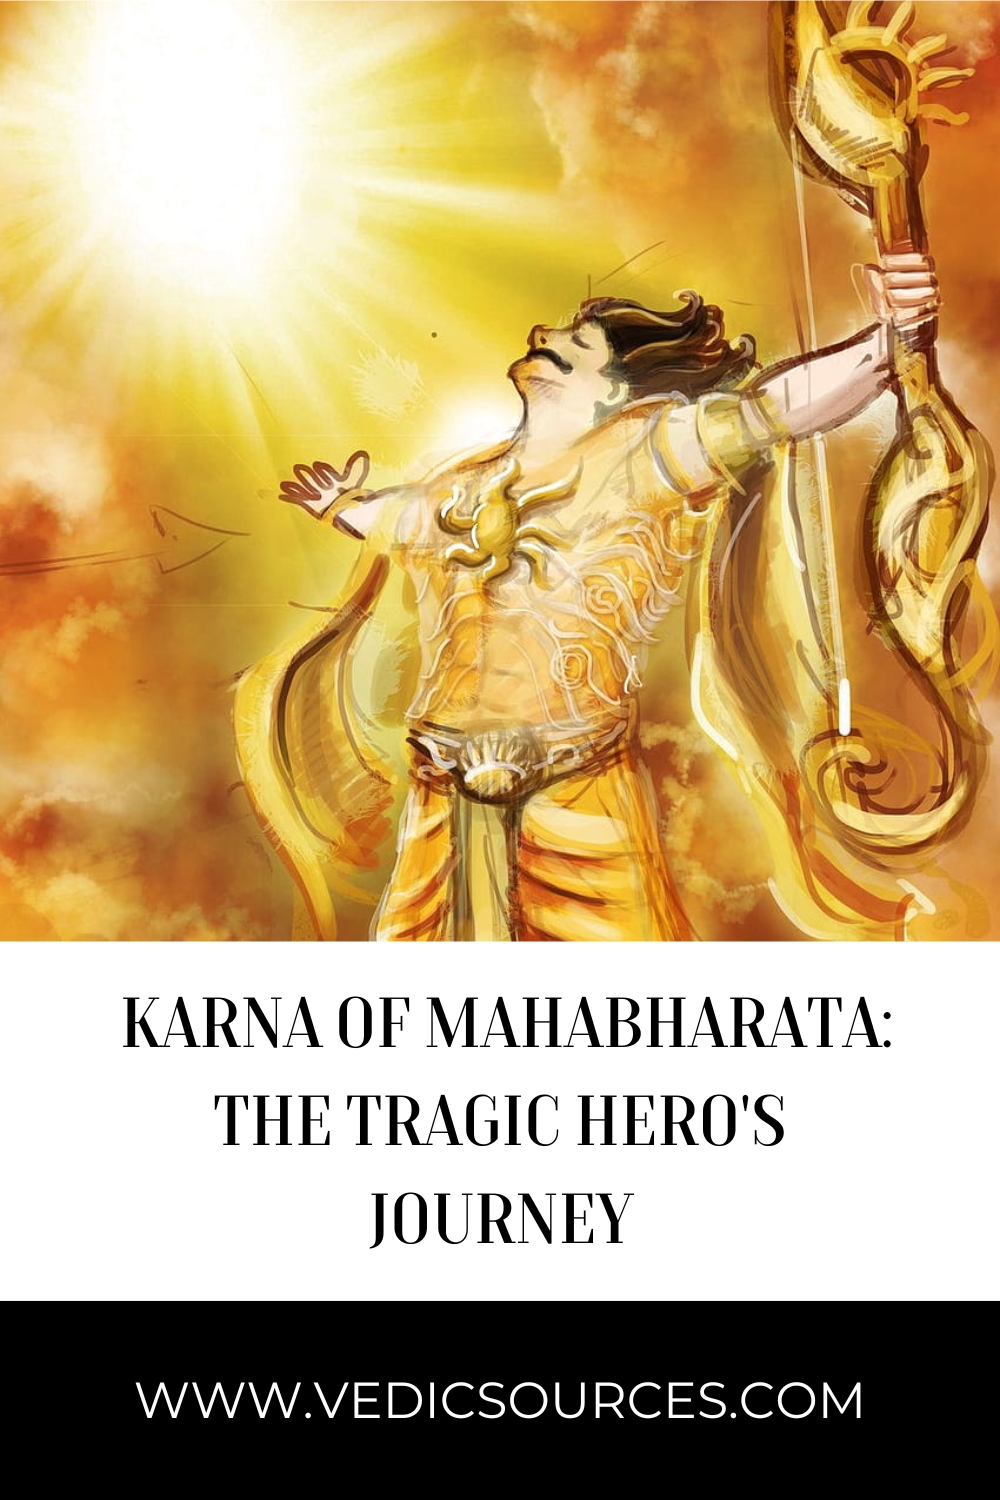 Karna of Mahabharata: The Tragic Hero's Journey